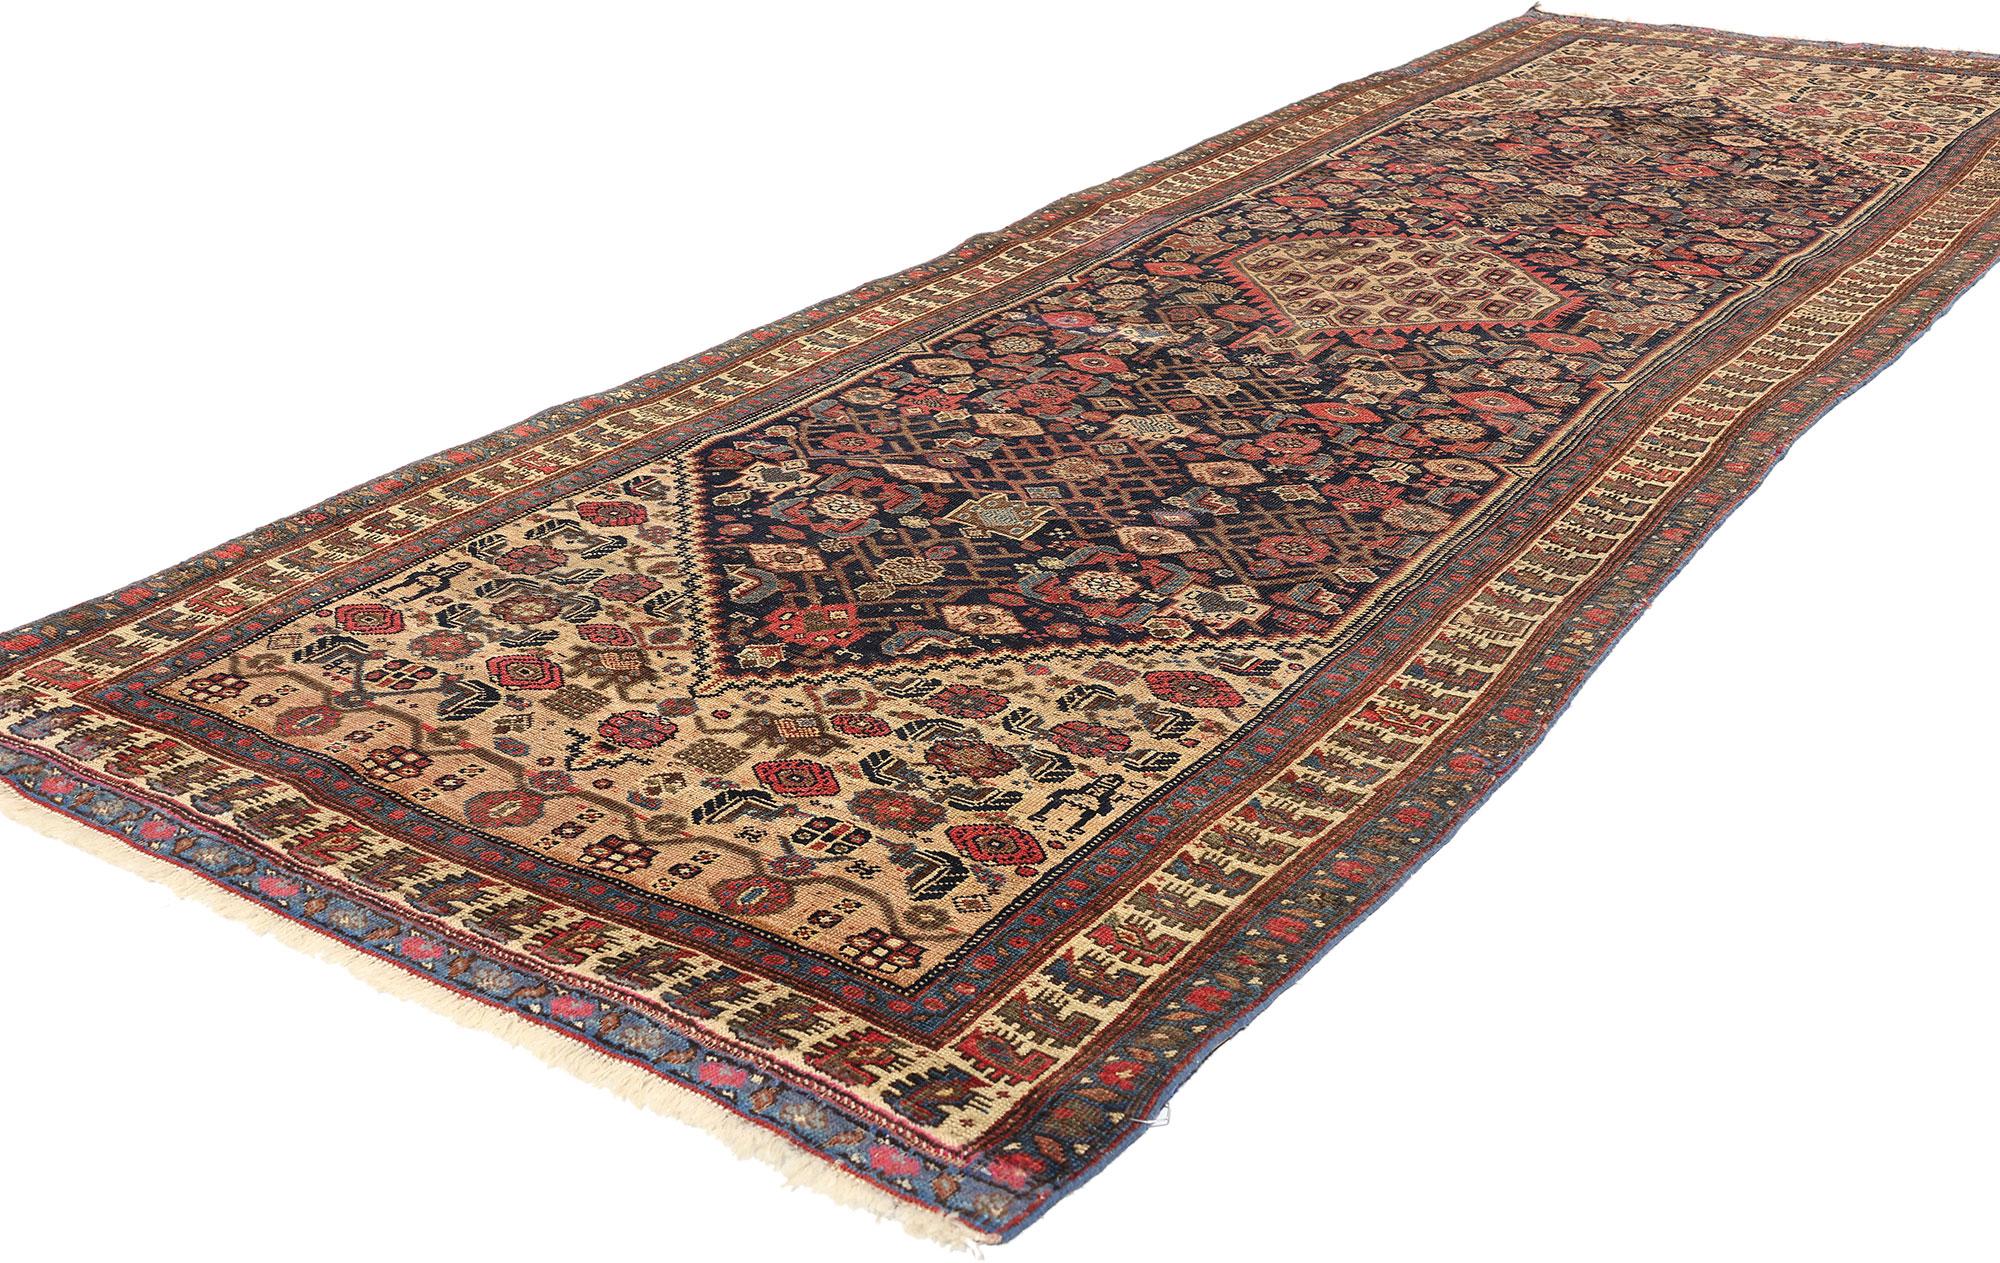 78754 Antiker persischer Bijar-Teppich Läufer, 03'08 x 11'01. Persische Bijar-Teppichläufer, schlank und langgestreckt, stammen aus Bijar im westlichen Iran und sind für ihre unvergleichliche Haltbarkeit und Widerstandsfähigkeit bekannt. Diese